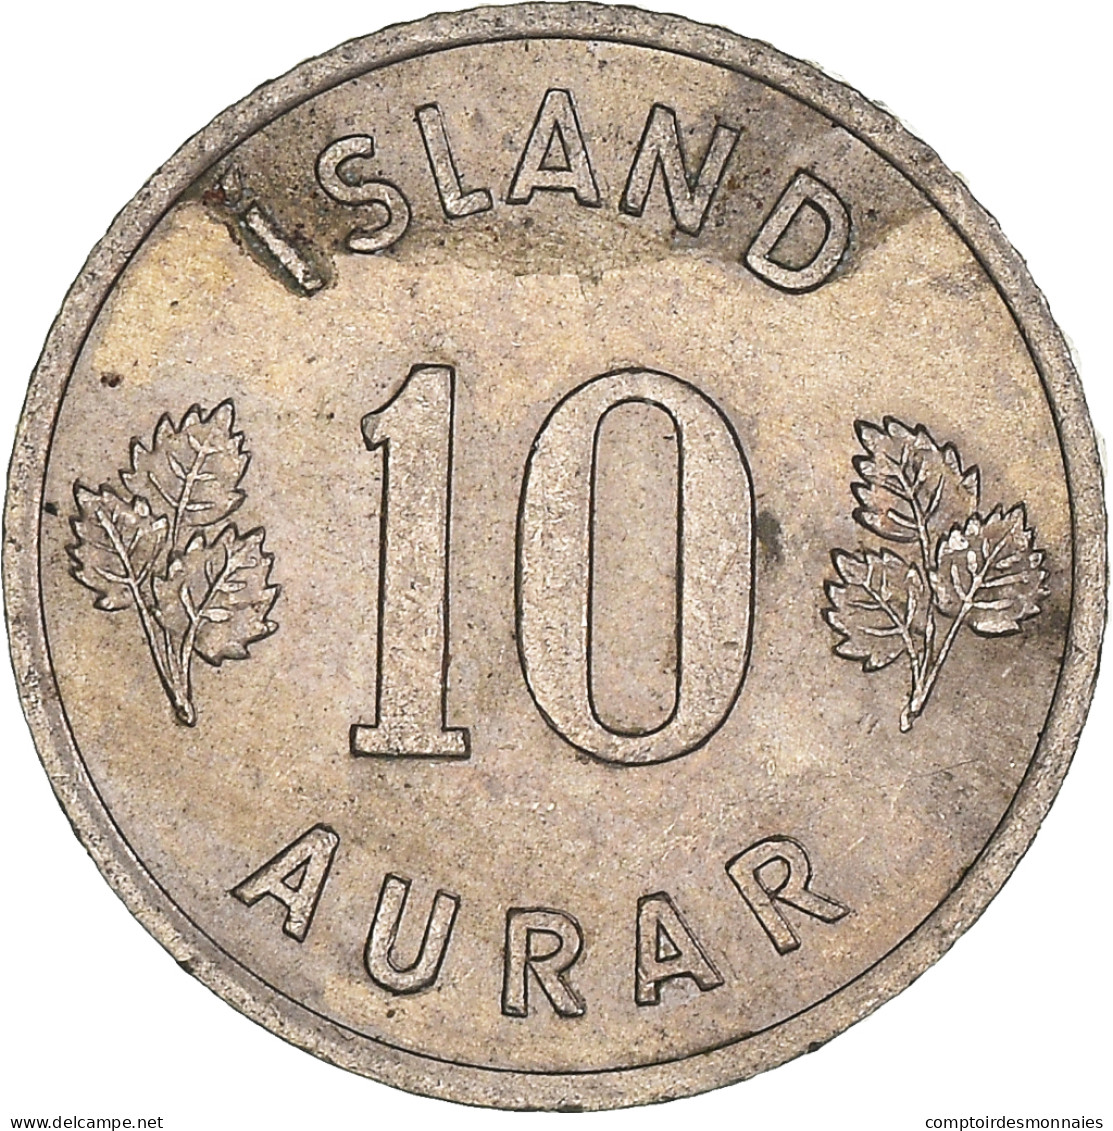 Monnaie, Islande, 10 Aurar, 1958 - Islande